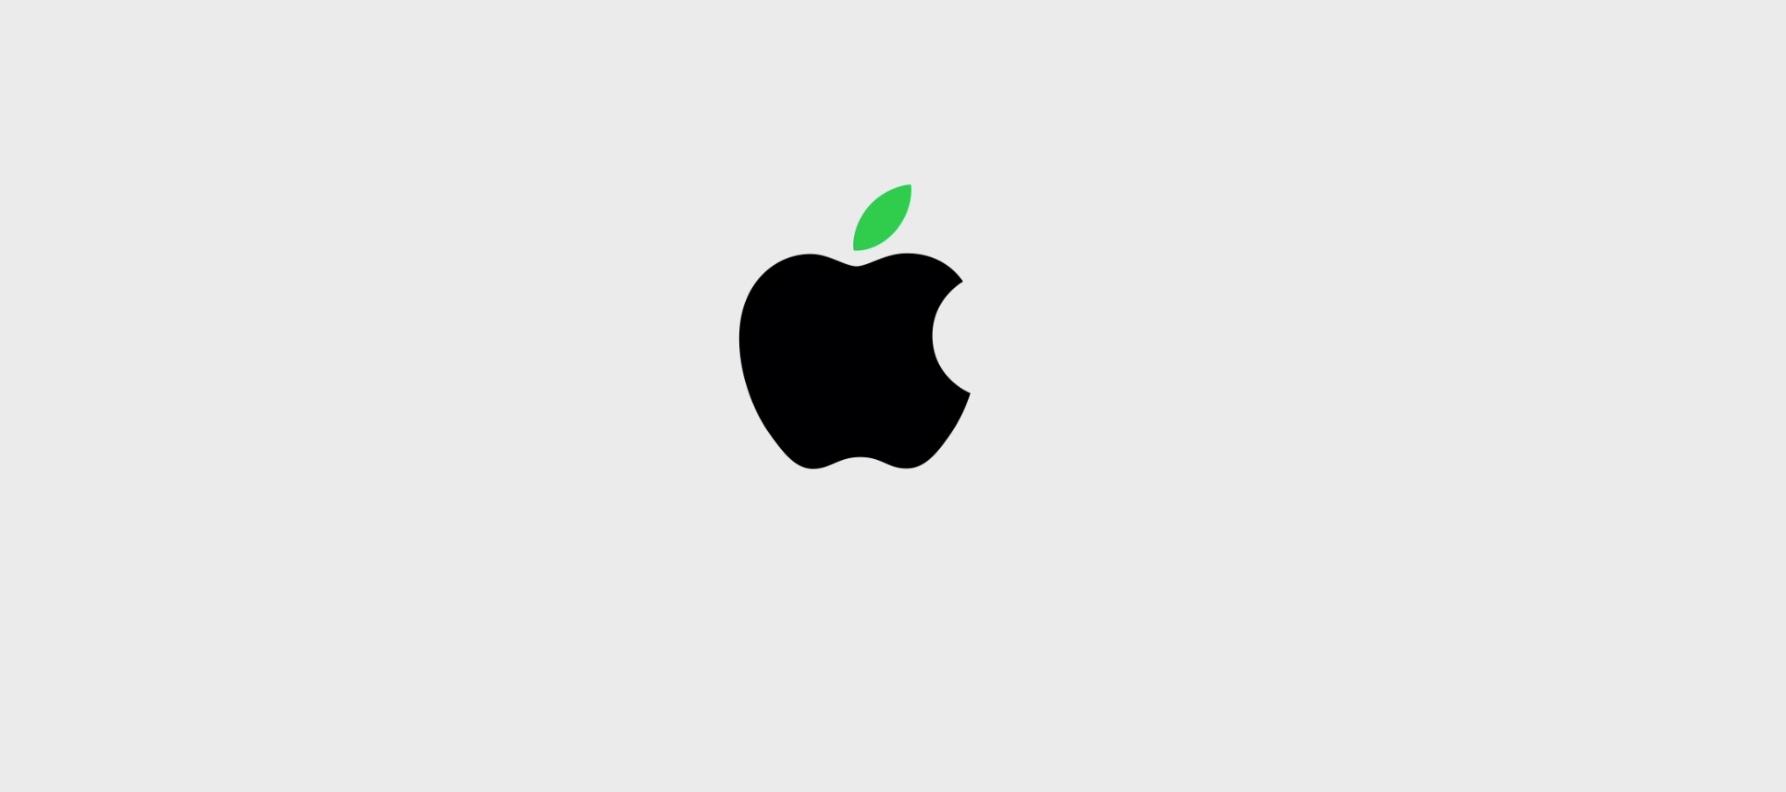 Keynote Apple 12 settembre, ecco cosa sarà presentato - diretta ore 19